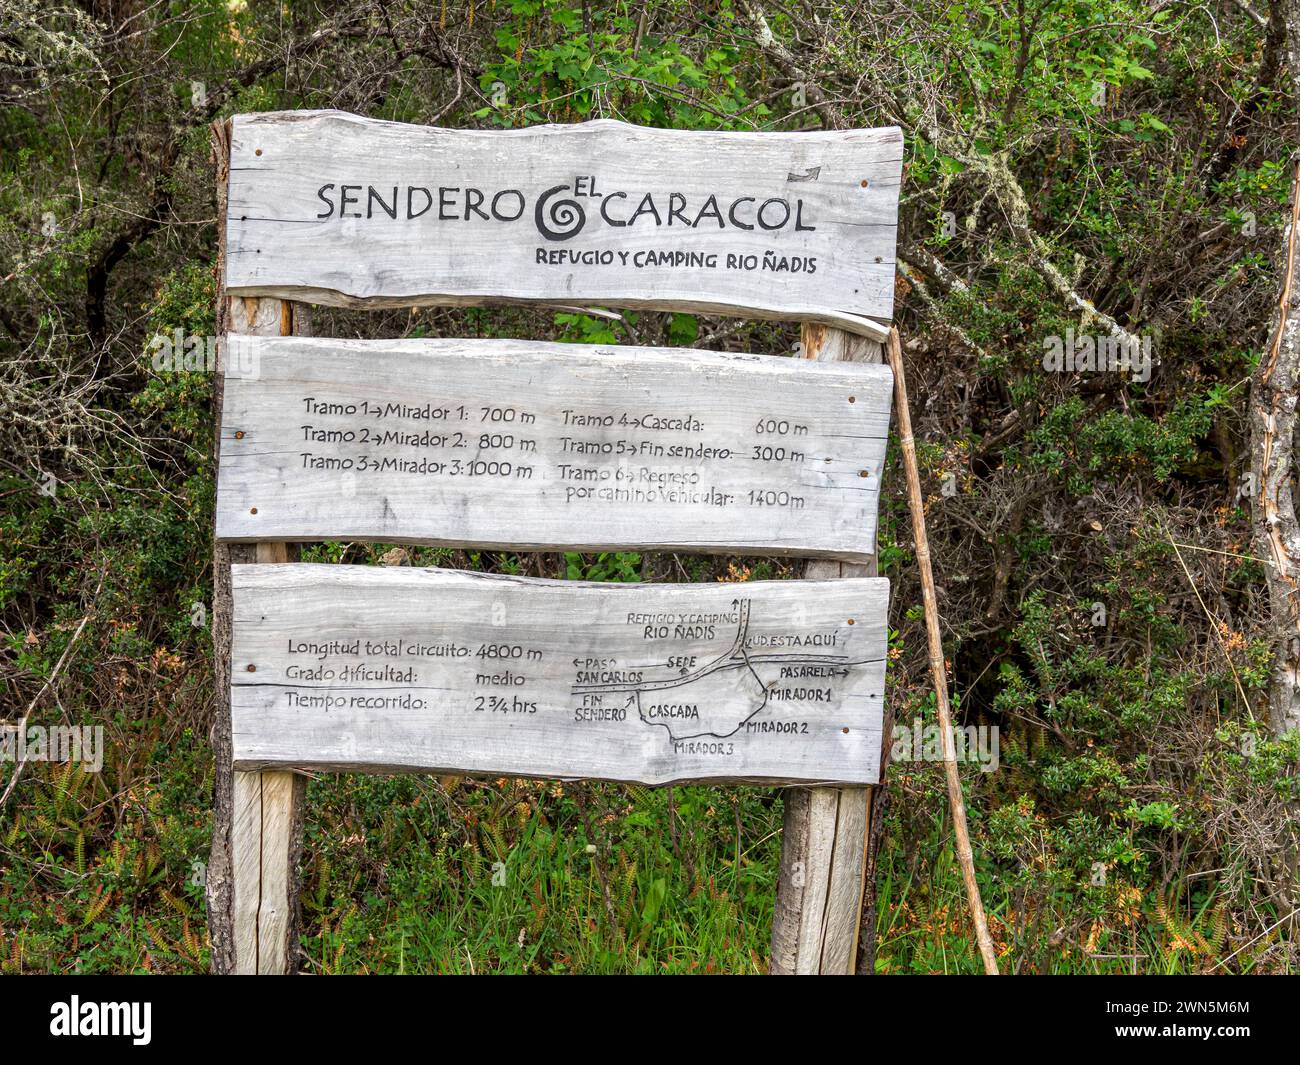 Panneau de signalisation du sentier Sendero El Caracol, sentier de randonnée de refugio Rio Nadis, Patagonie, Chili Banque D'Images